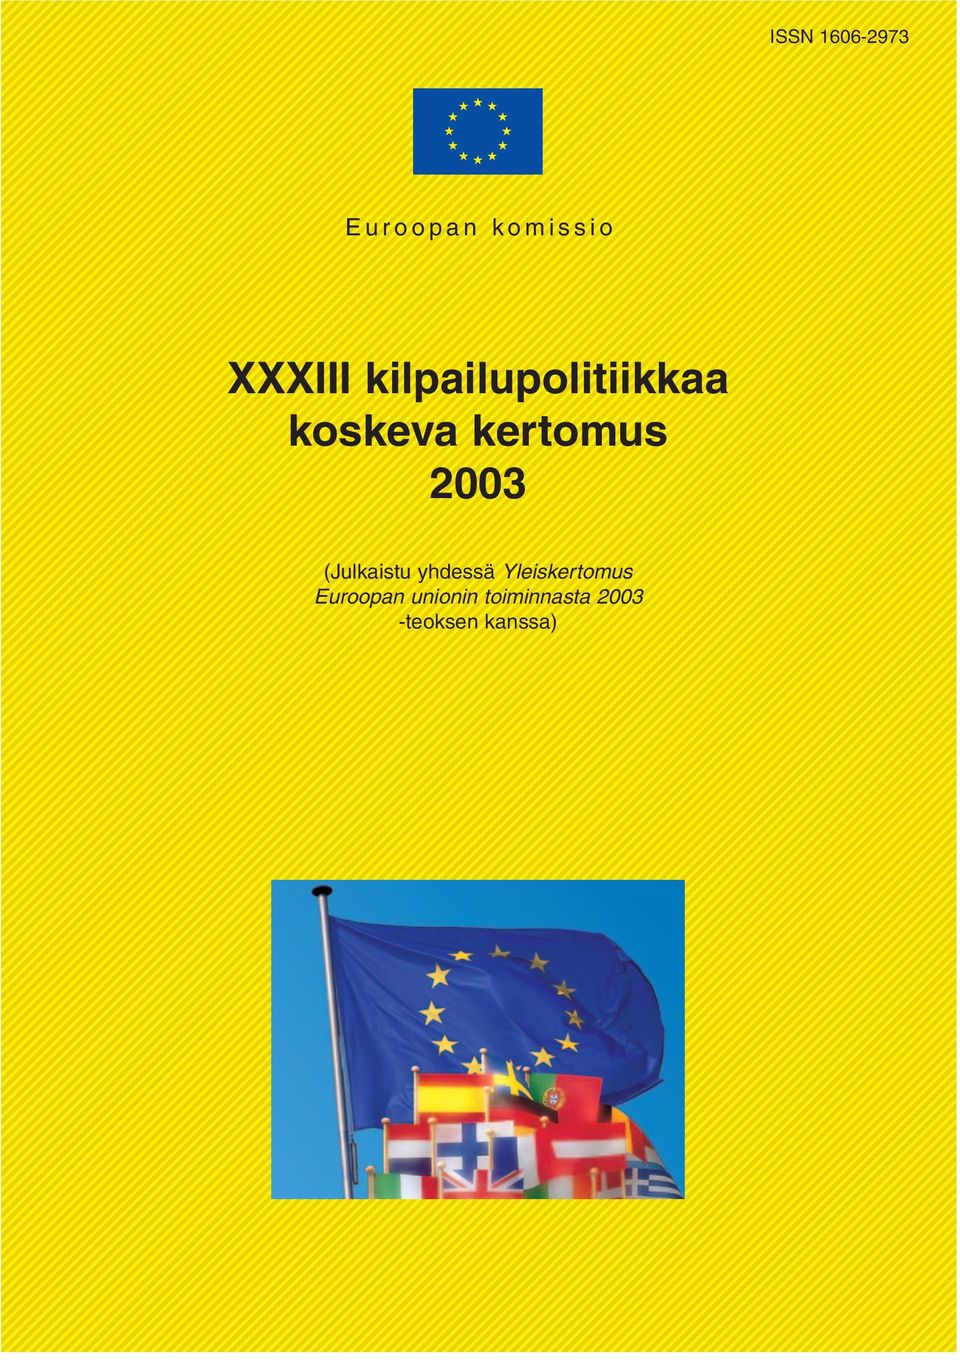 (Julkaistu yhdessä Yleiskertomus Euroopan